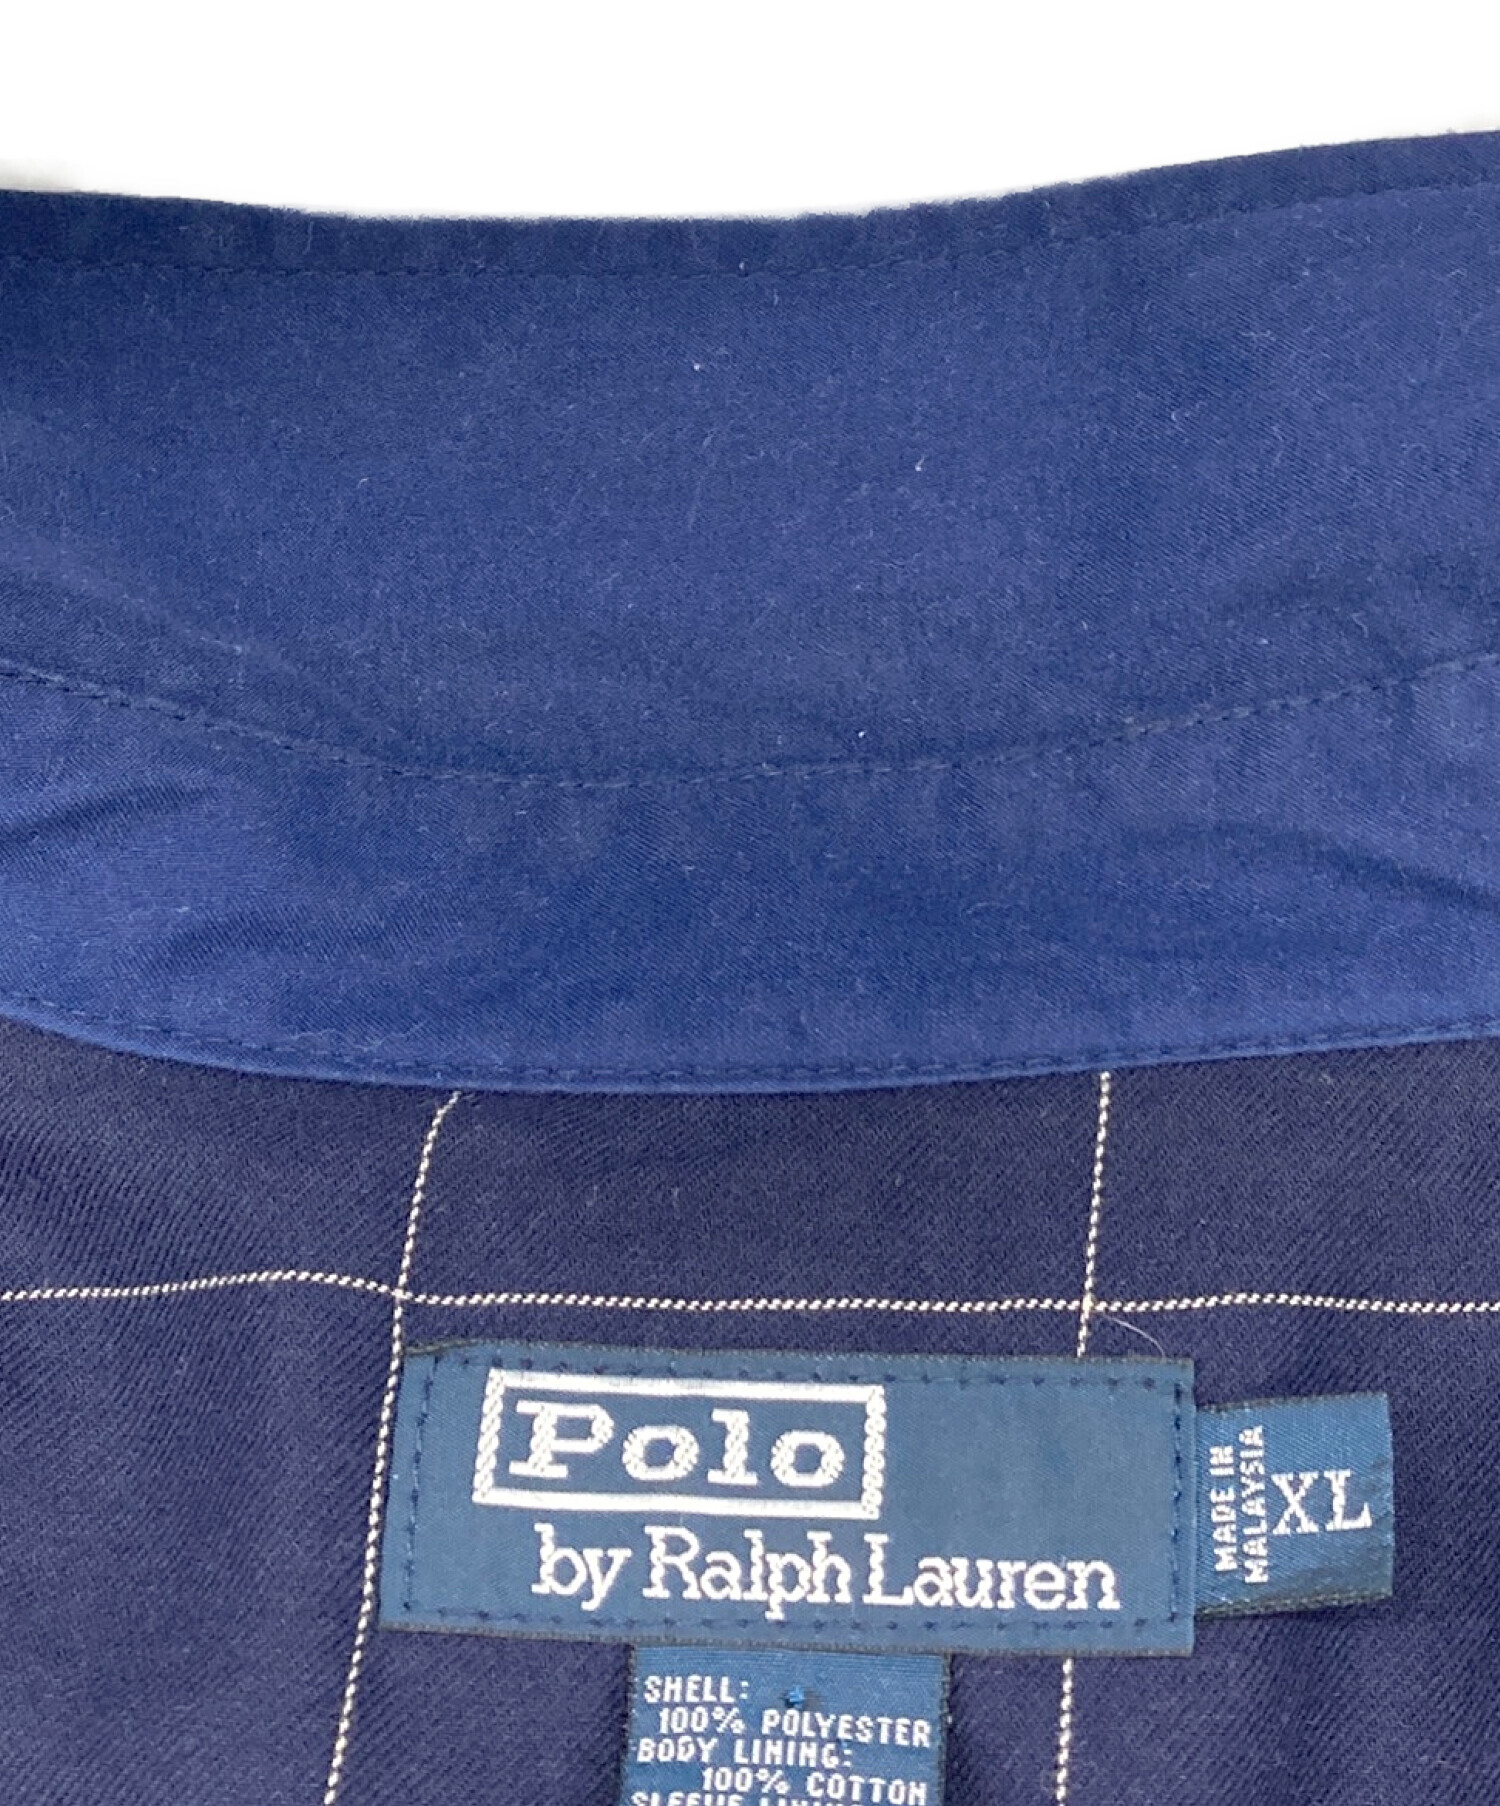 POLO RALPH LAUREN (ポロ・ラルフローレン) スイングトップ ネイビー サイズ:XL